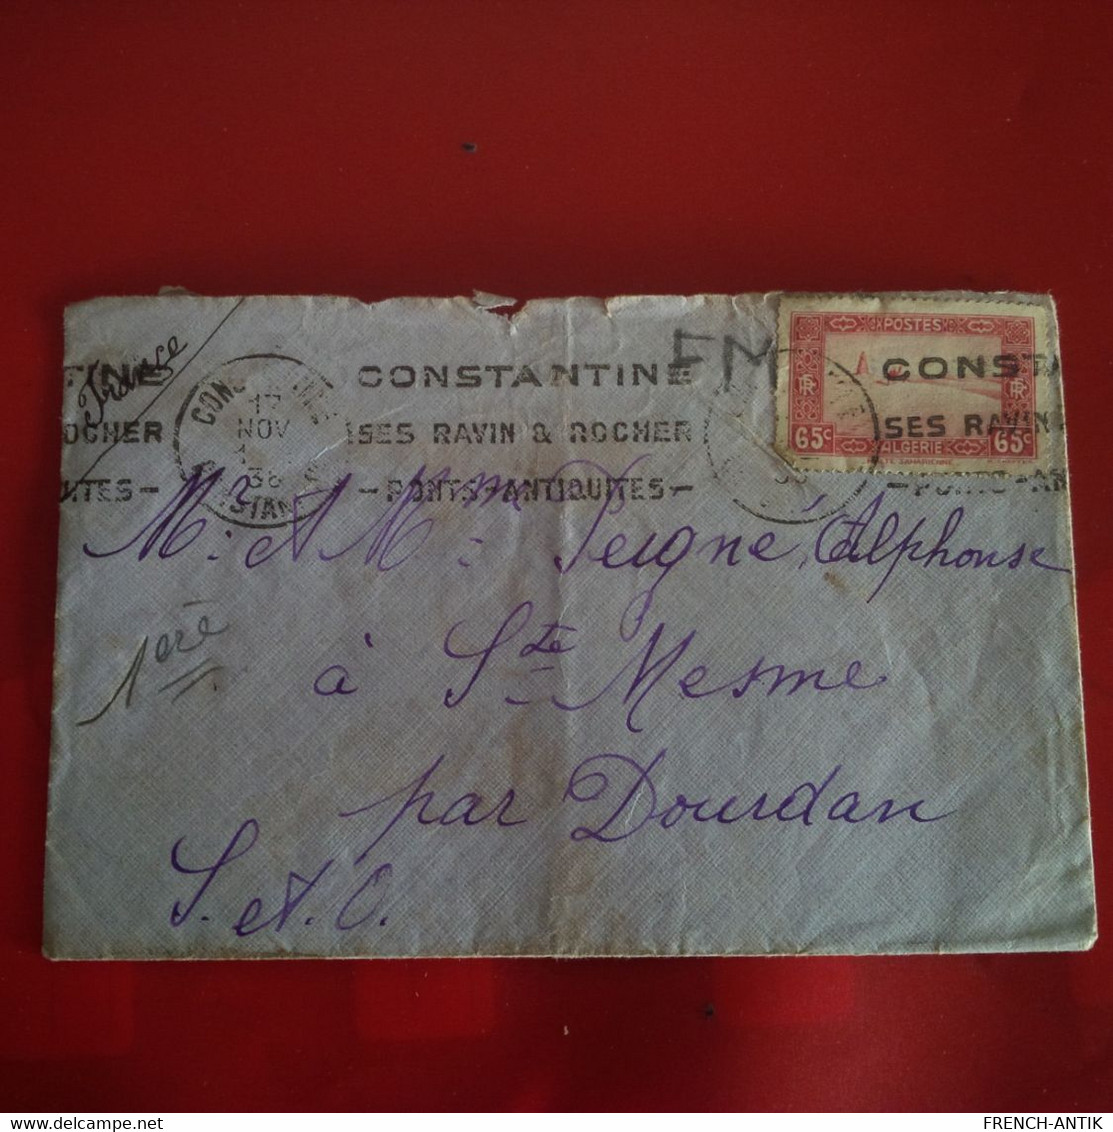 LETTRE AVEC COURRIER CONSTANTINE POUR ST MESME PAR DOURDAN 1938 CORRESPONDANCE MILITAIRE - Cartas & Documentos